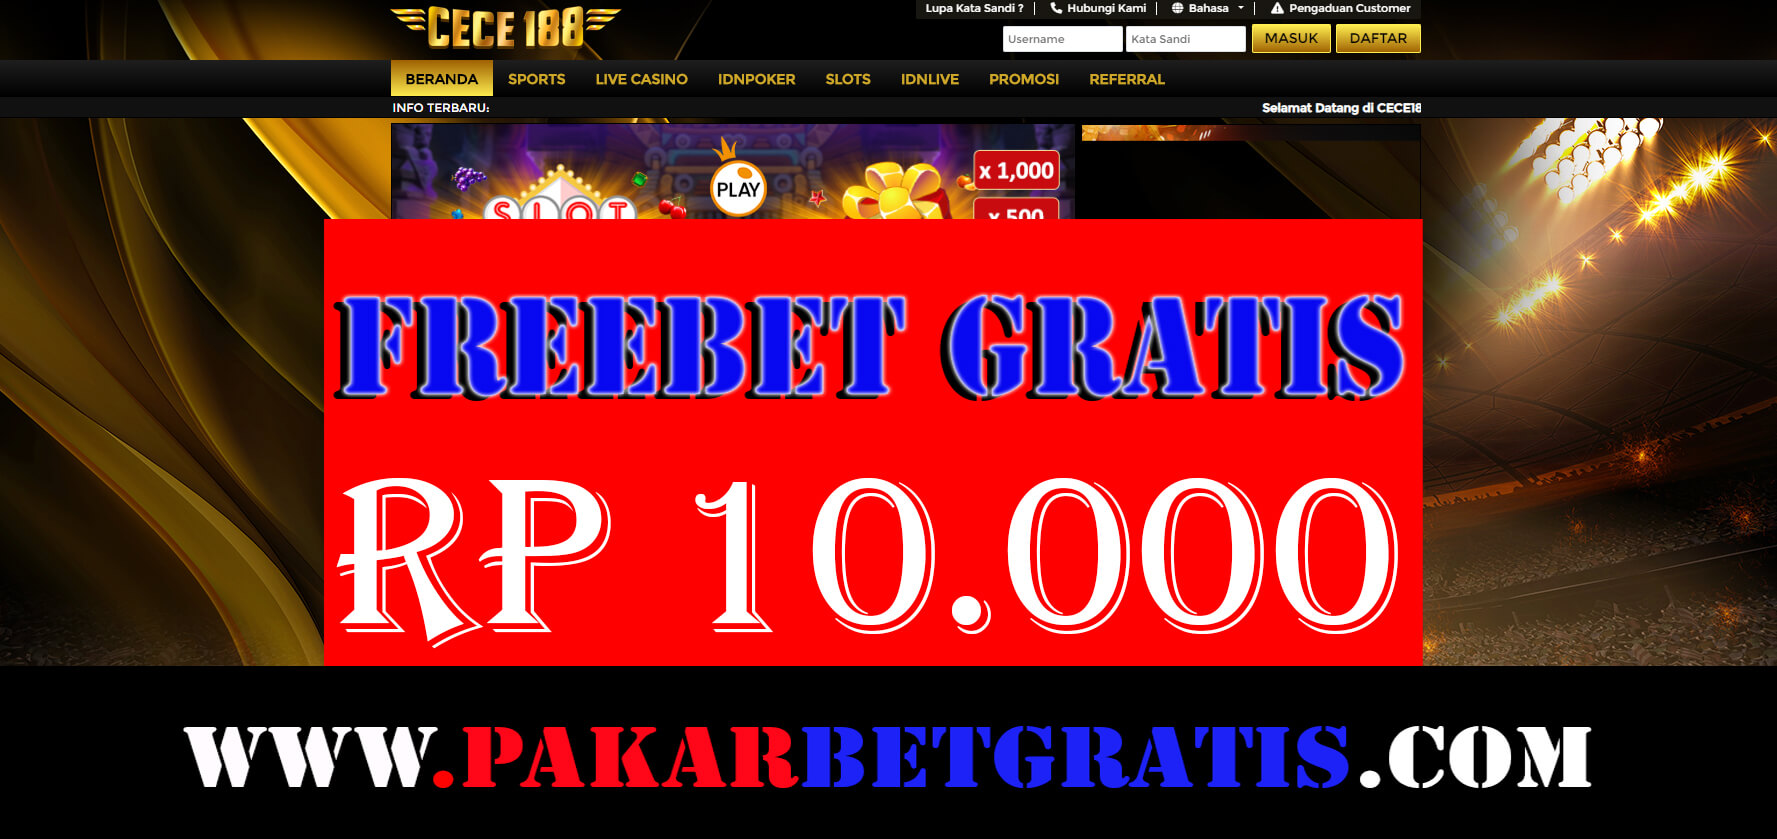 Freebet Gratis cece188 Rp 10.000 Tanpa Deposit